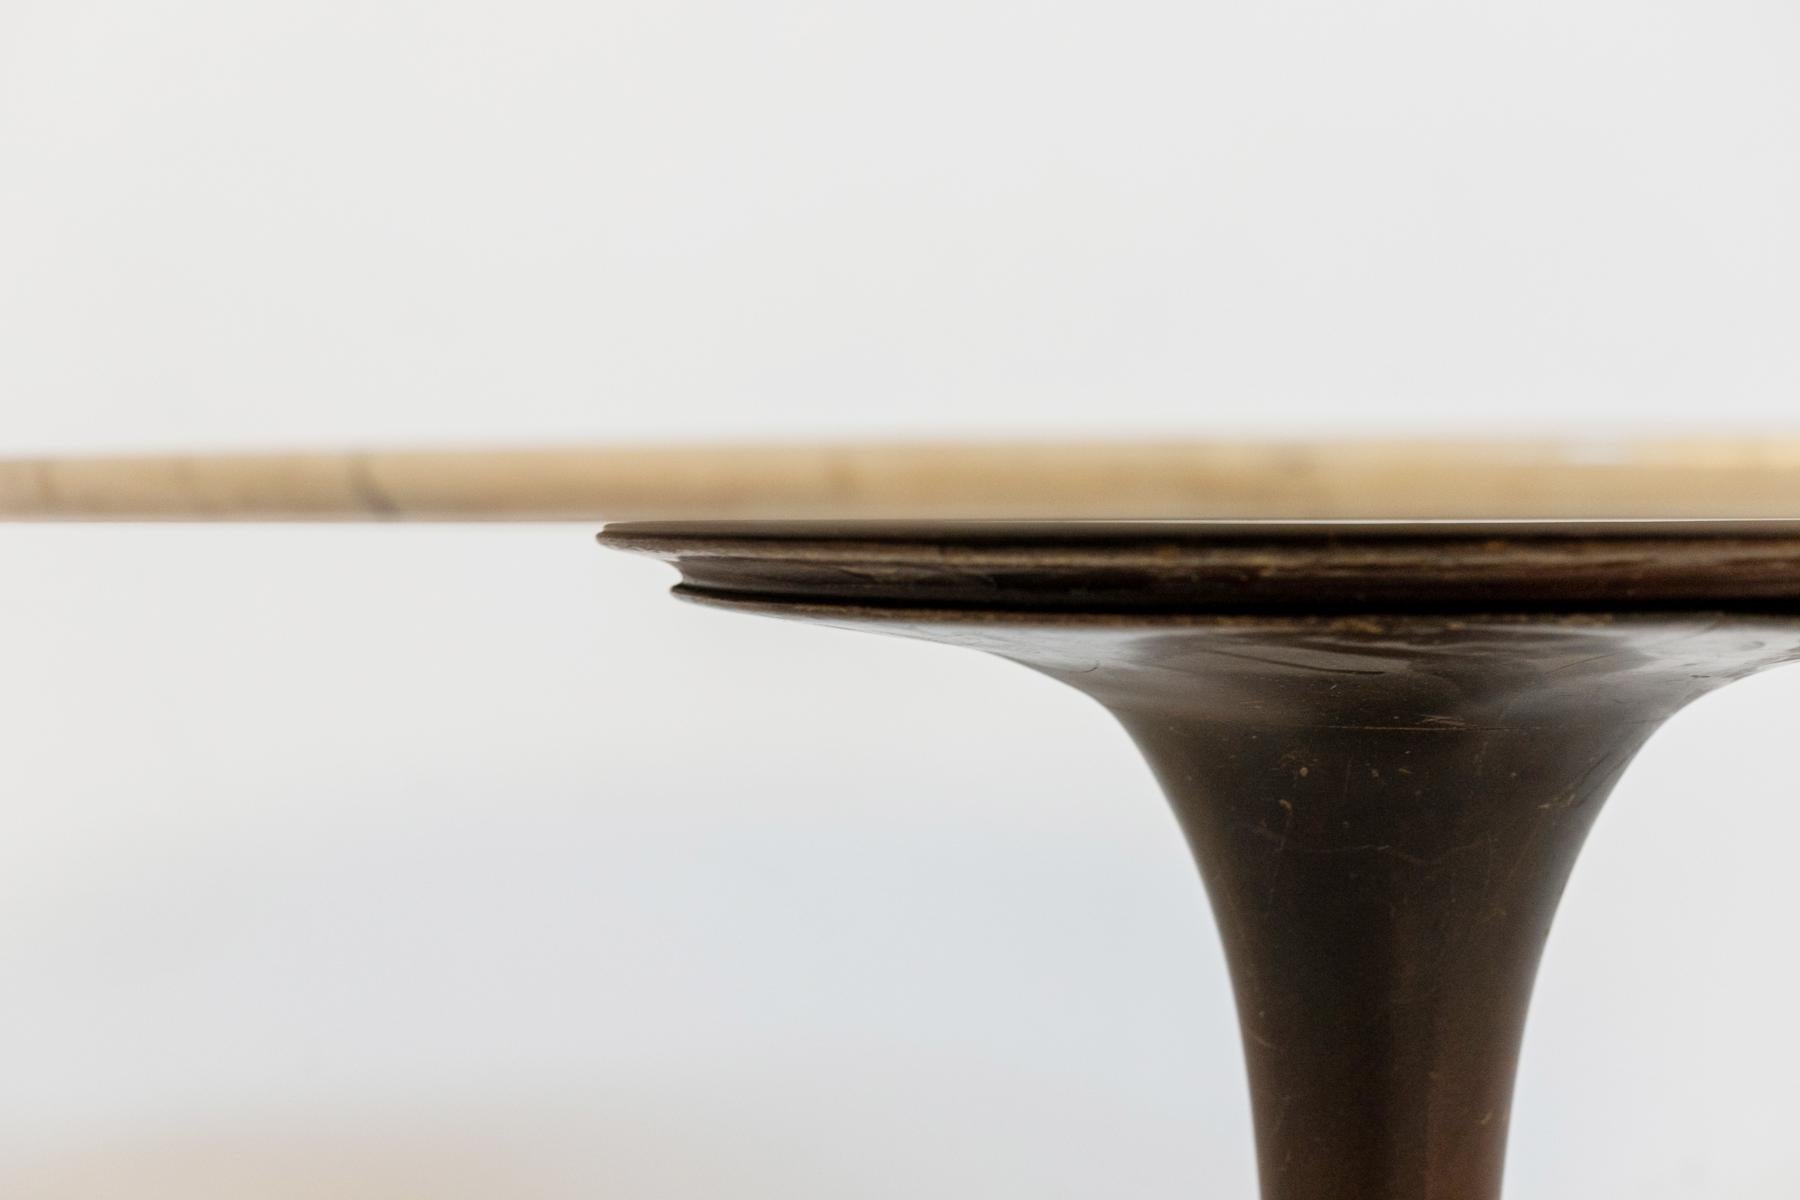 Magnifique table en bois conçue par Luigi Massoni dans les années 70 pour la manufacture italienne Boffi.
La table a une structure ronde entièrement en bois fin, soutenue par une seule tige, qui repose sur une base ronde.
Le plateau est fait d'un